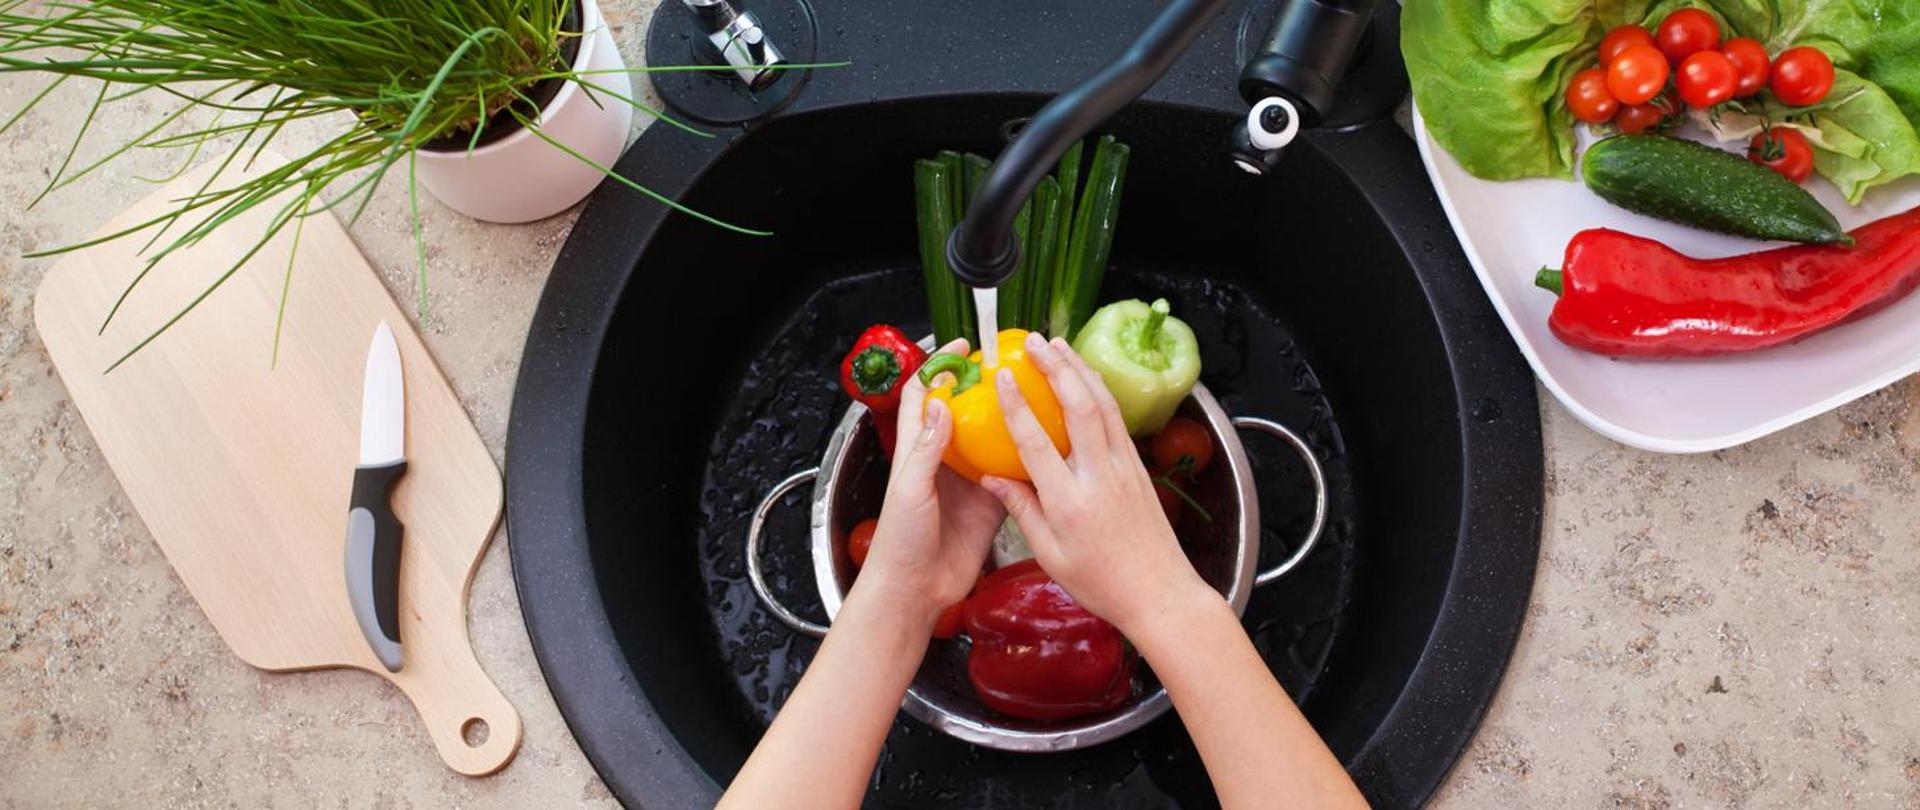 na blacie kuchennym pośrodku znajduje się zlewozmywak w nim garnek z papryką mytą w dłoniach, po obydwu stronach zlewozmywaka znajdują się naczynia z warzywami jak sałata, pomidory, ogórek szczypior.